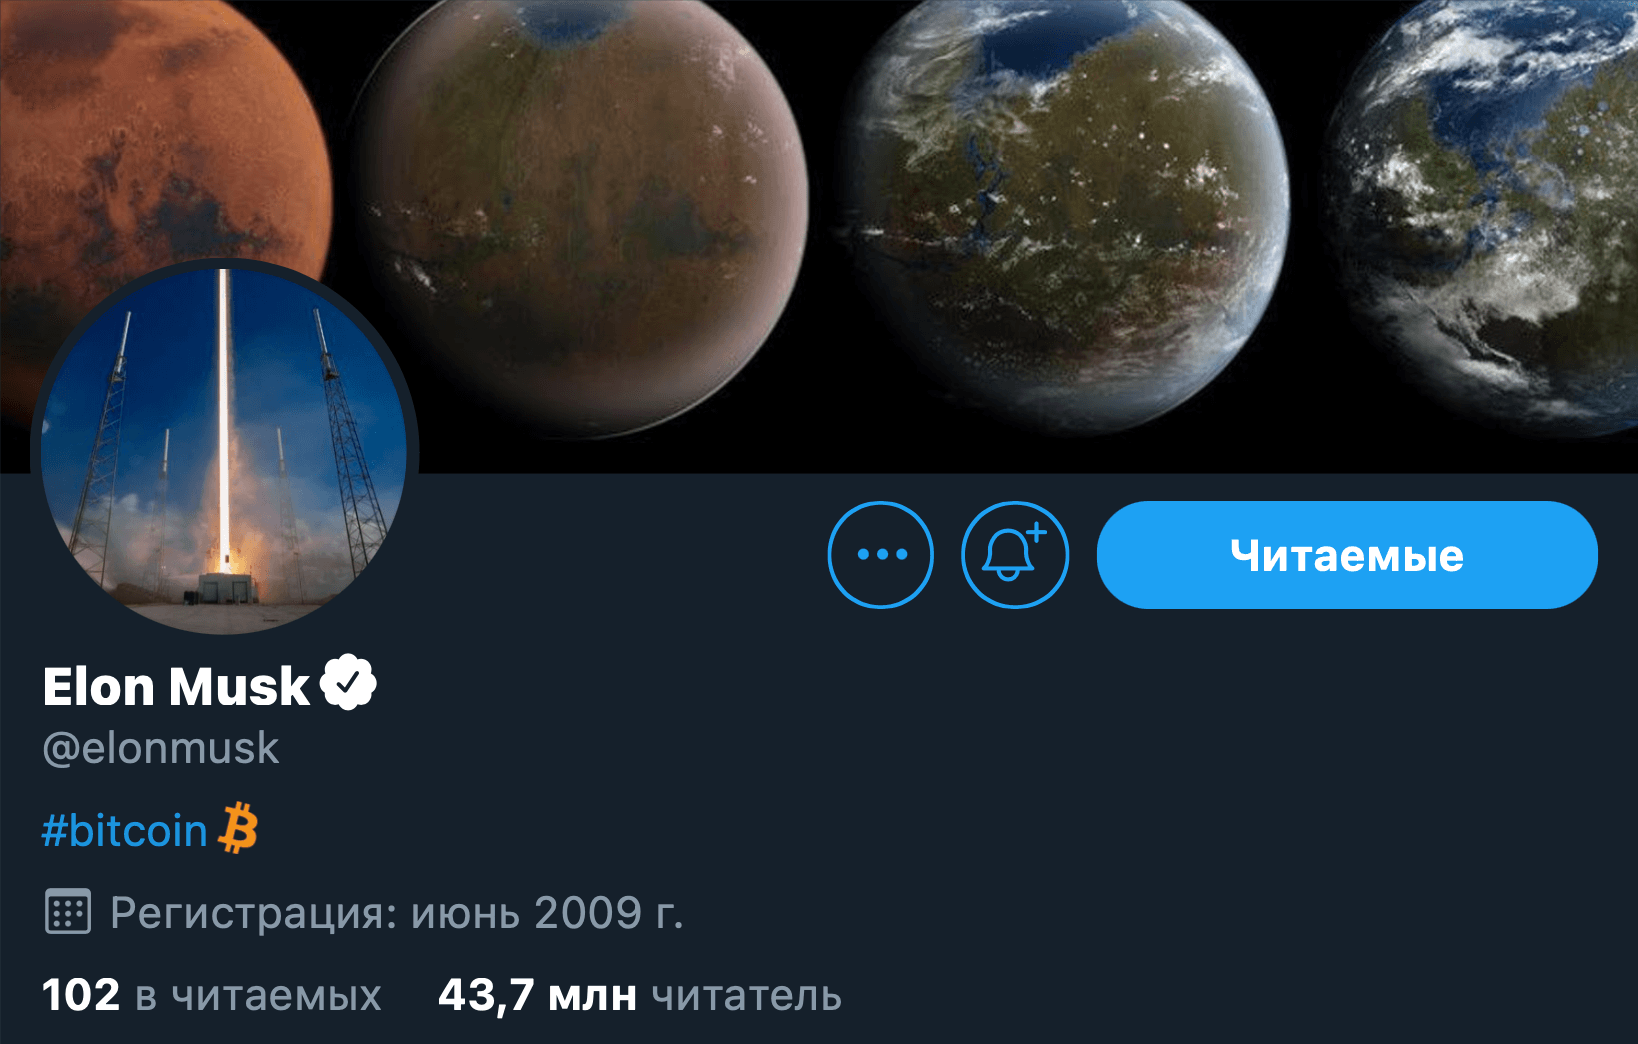 Илон Маск случайно запустил флешмоб среди поклонников Биткоина. Профиль Илона Маска в Твиттере. Фото.